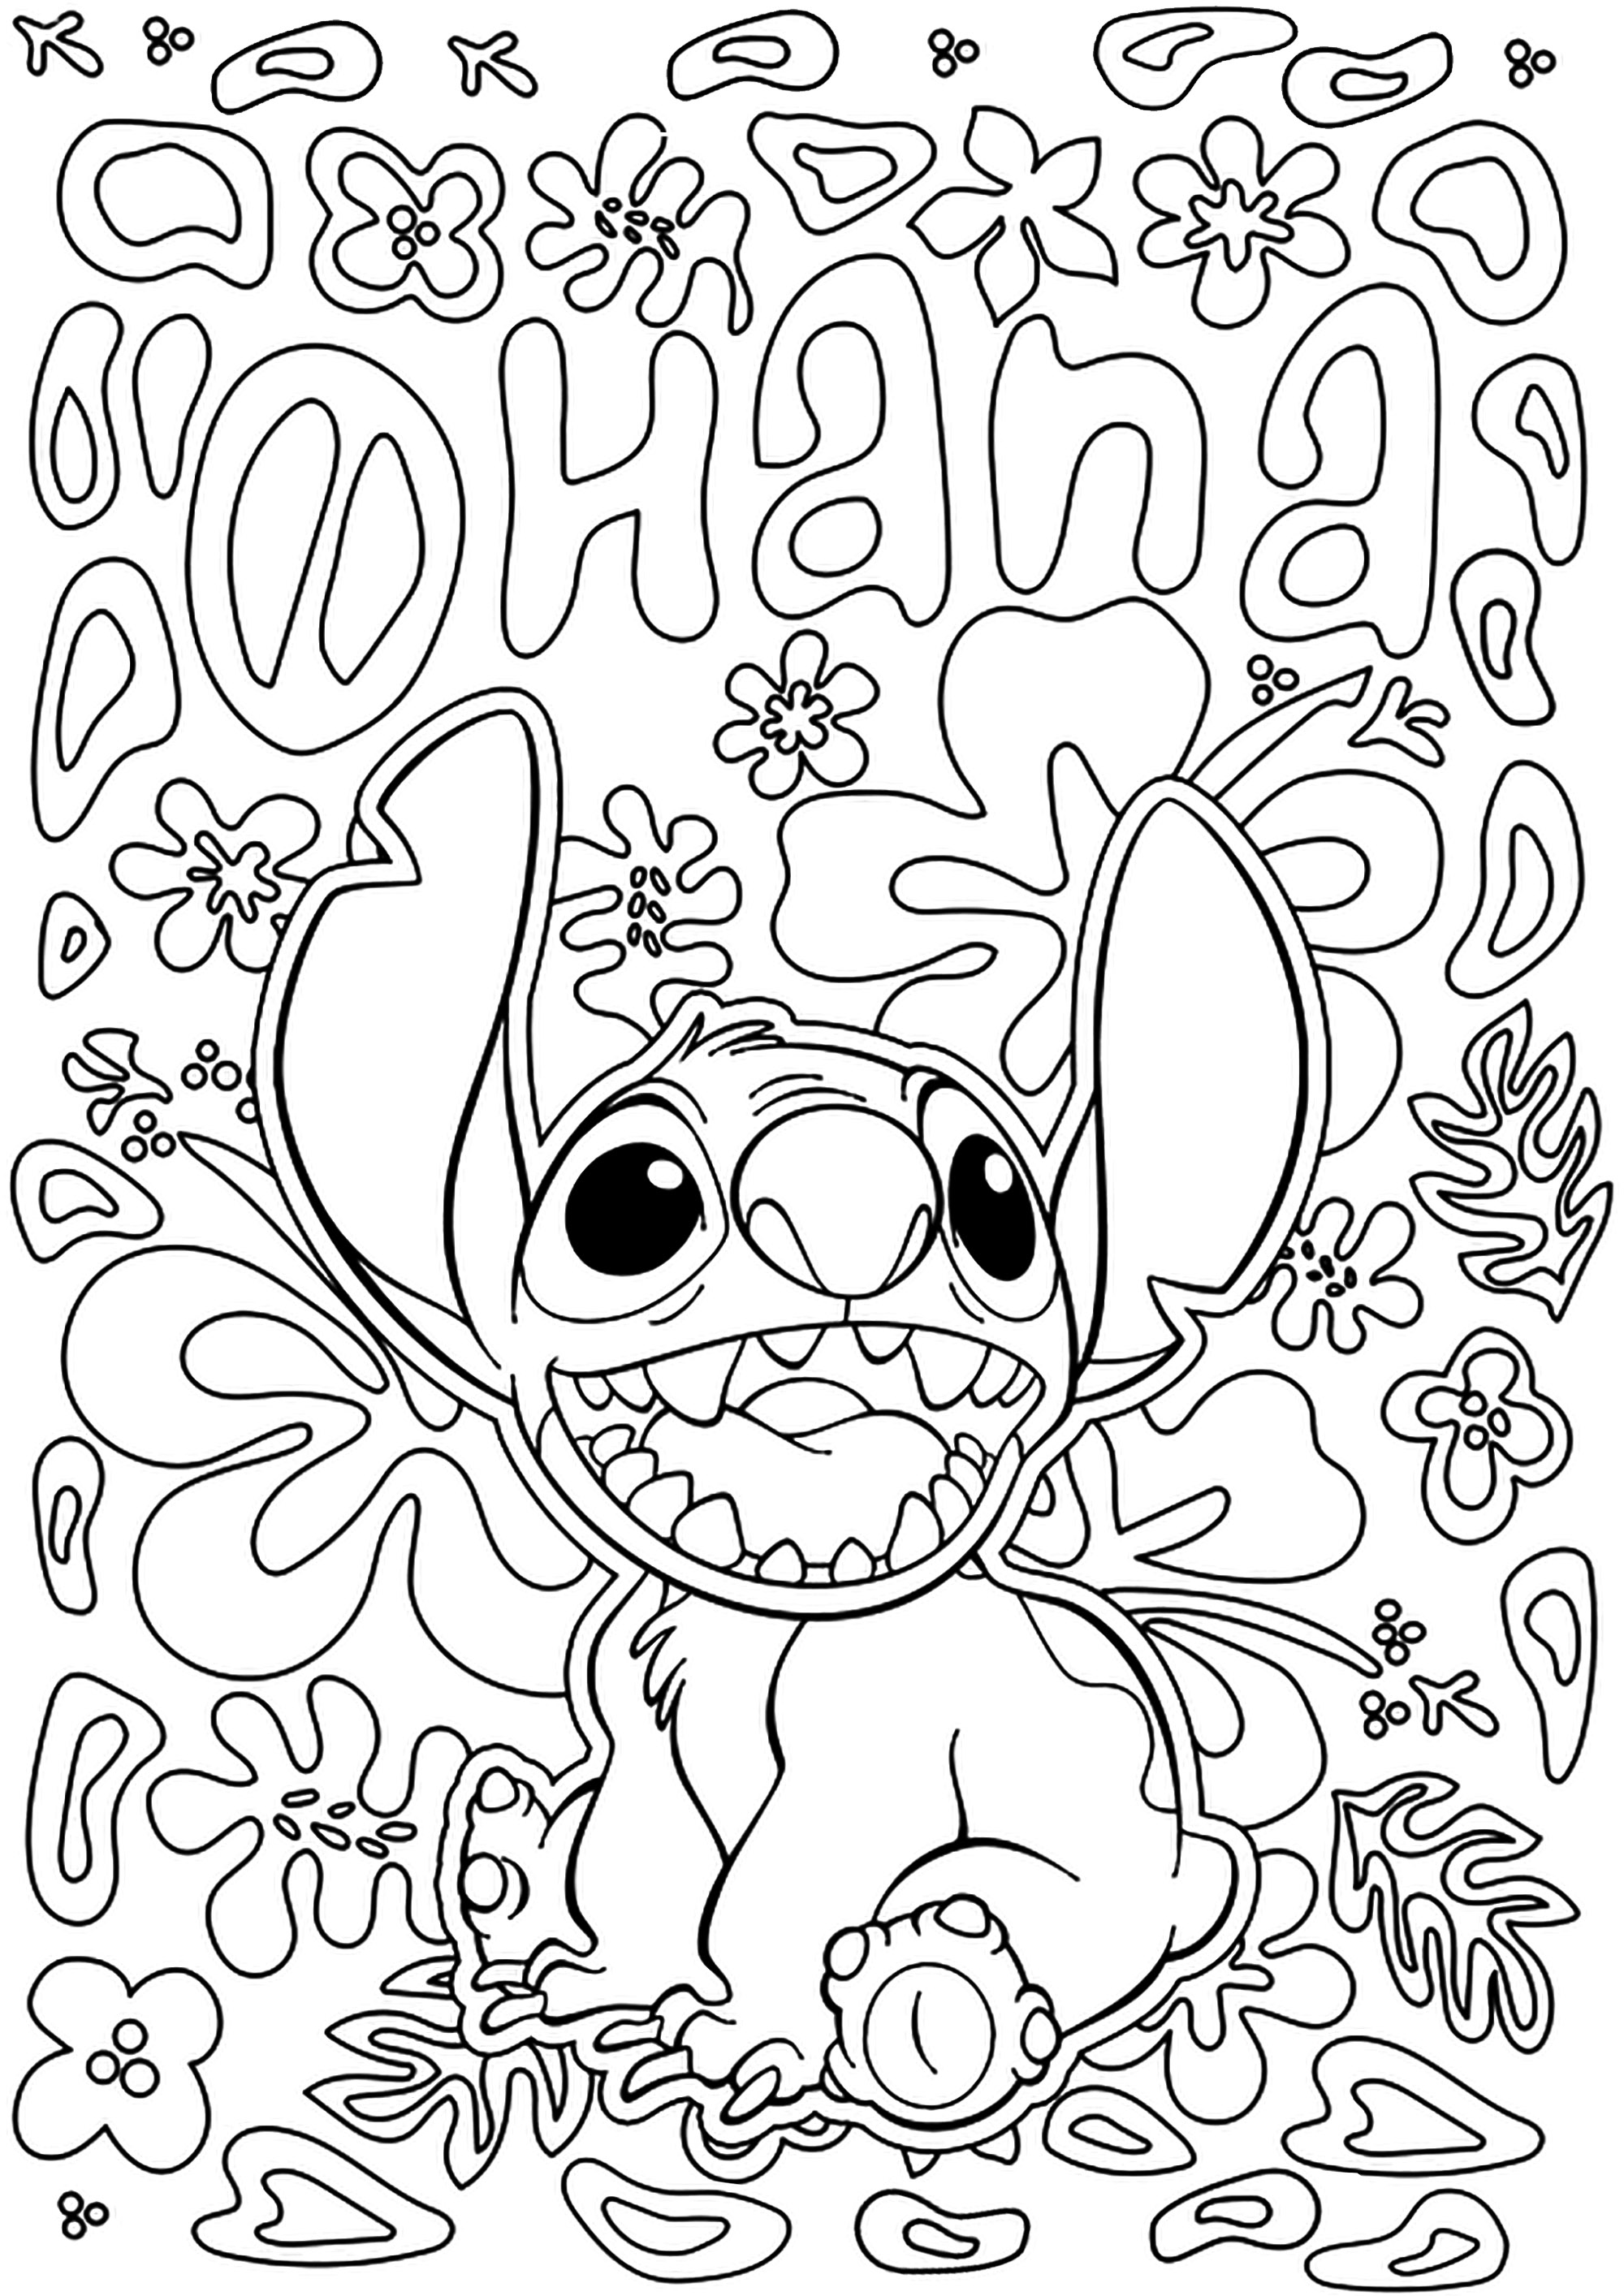 Página para colorear de Stitch con el texto 'Ohana' (de la película de animación de Disney Lilo y Stitch). Ohana es un término hawaiano que se traduce como 'familia', ya sea por adopción, sangre o intención.